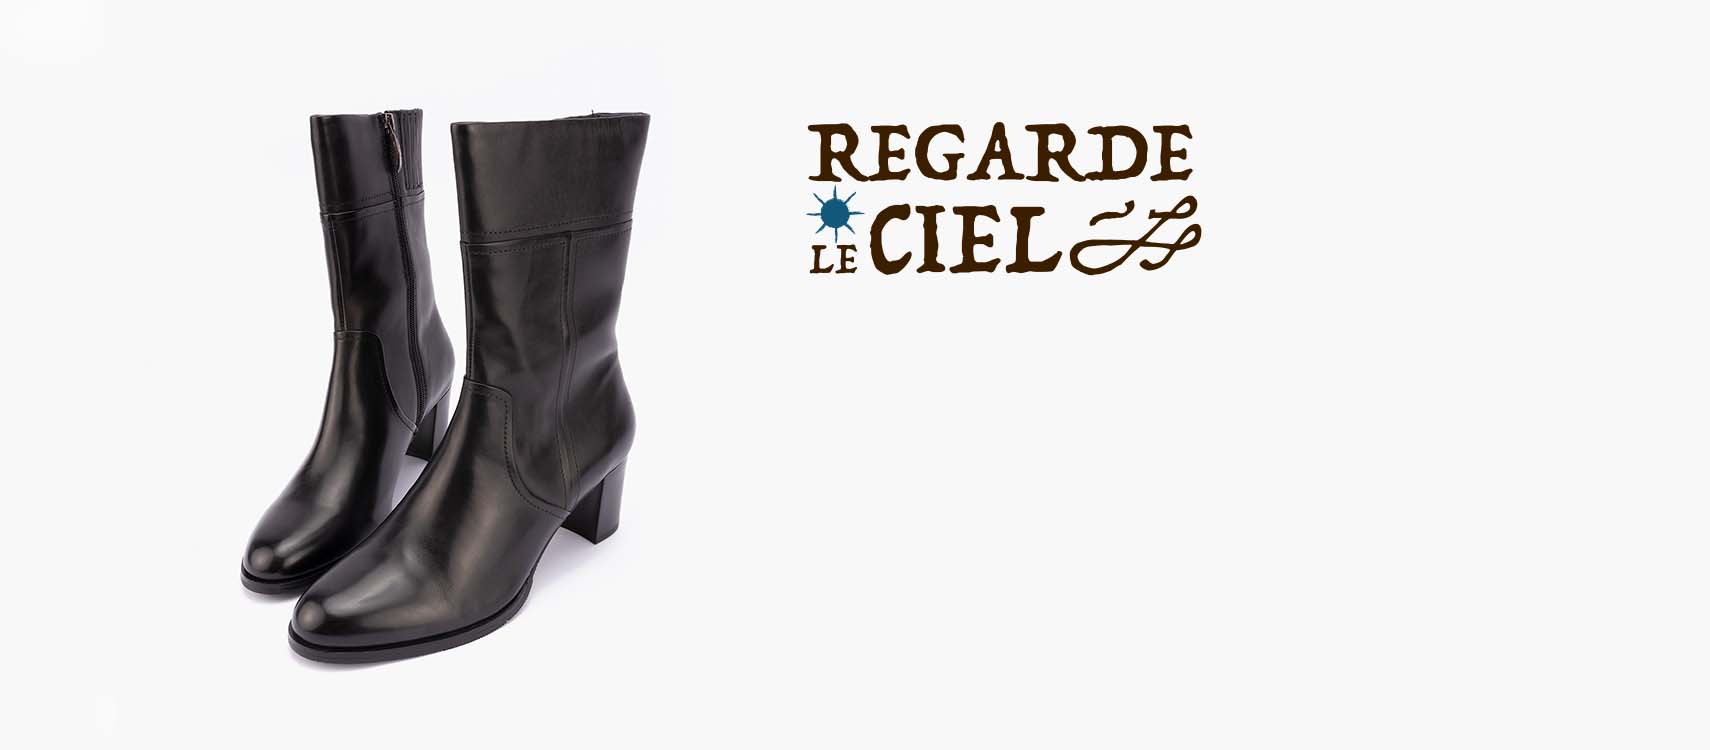 Spanish Shoes By Regarde Le Ciel